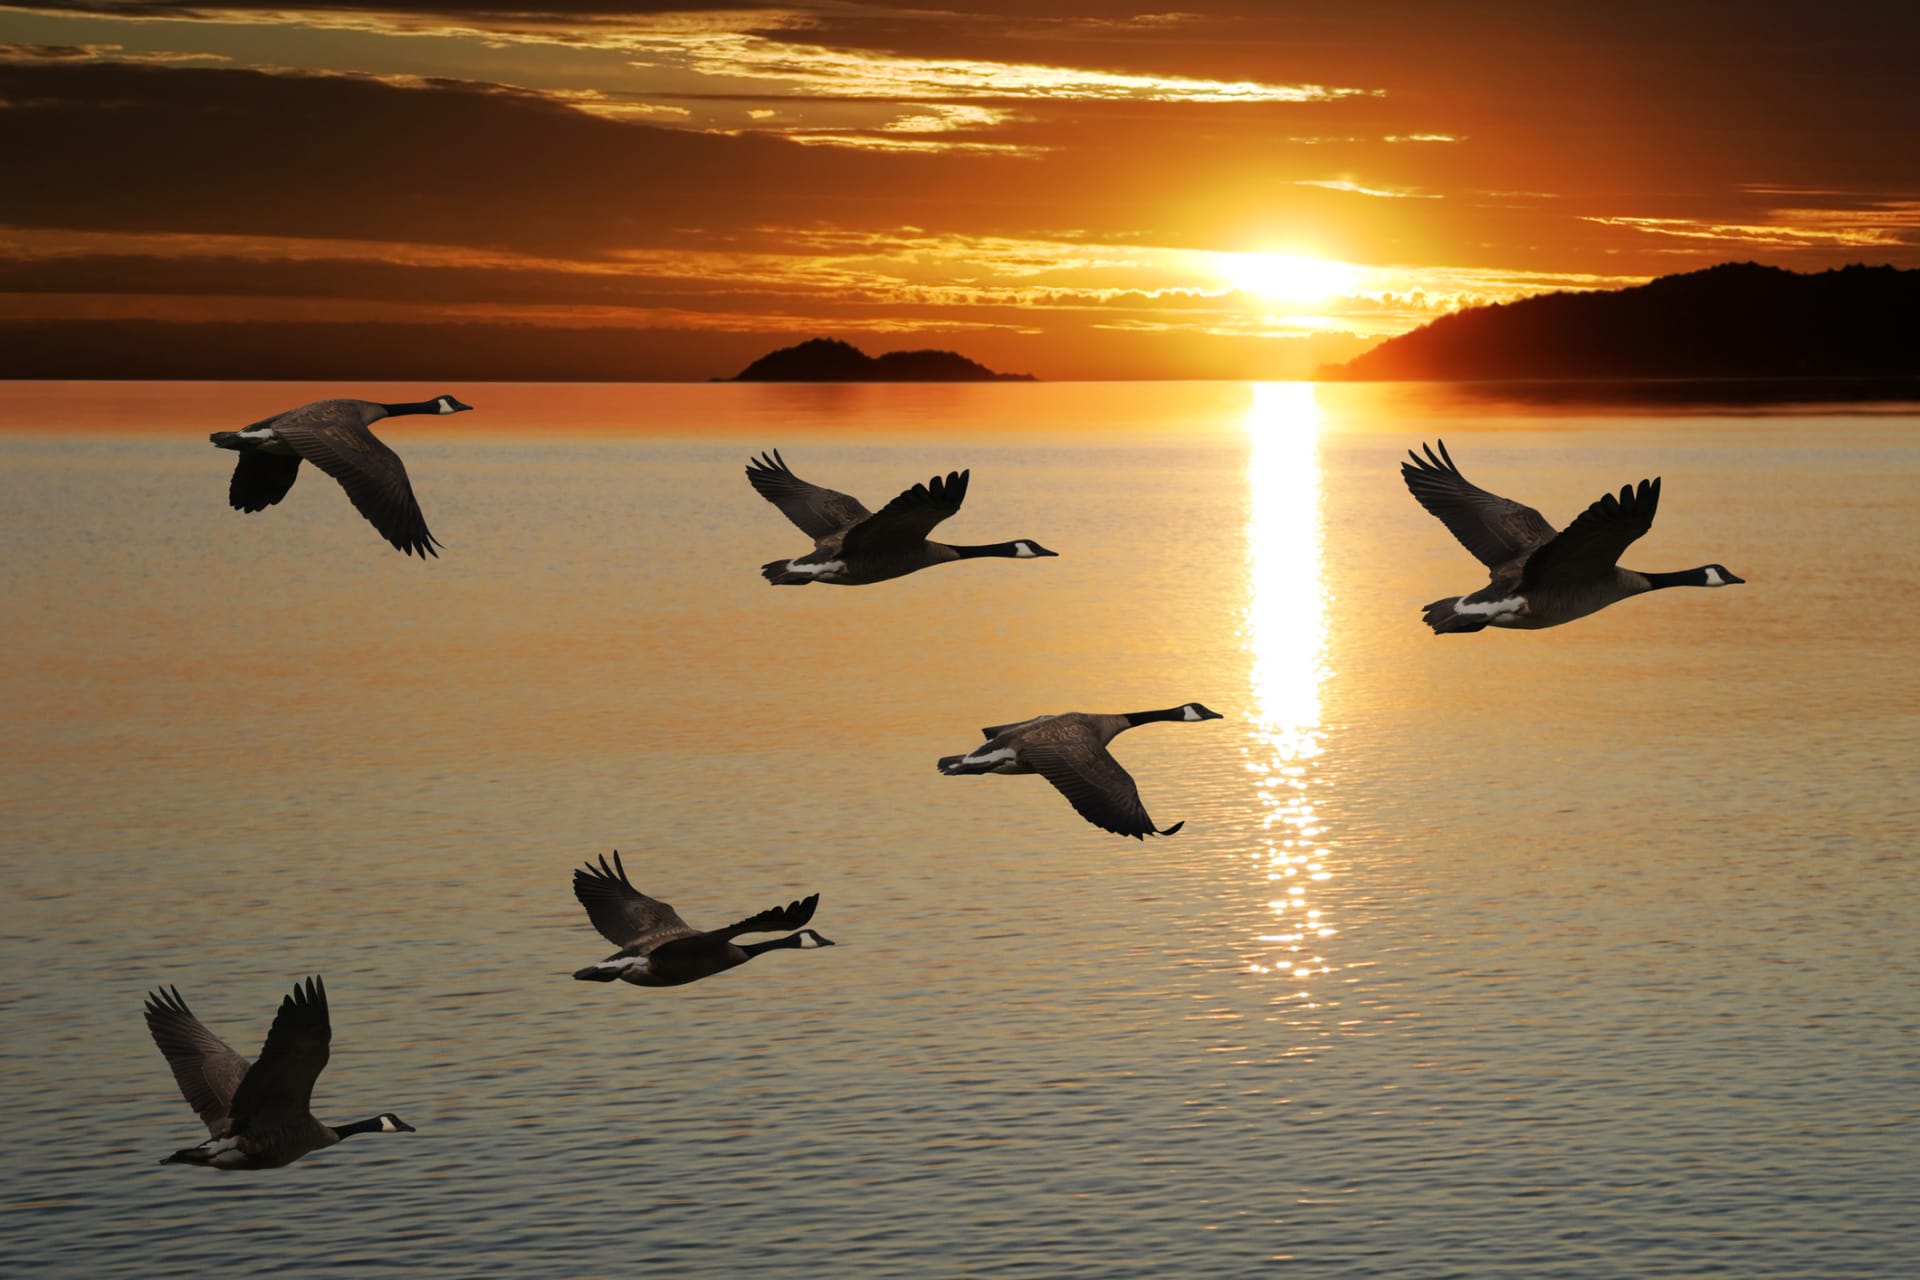 Na rozdíl od ostatních druhů, populace vodního ptactva, jako např. kanadských hus, je na vzestupu